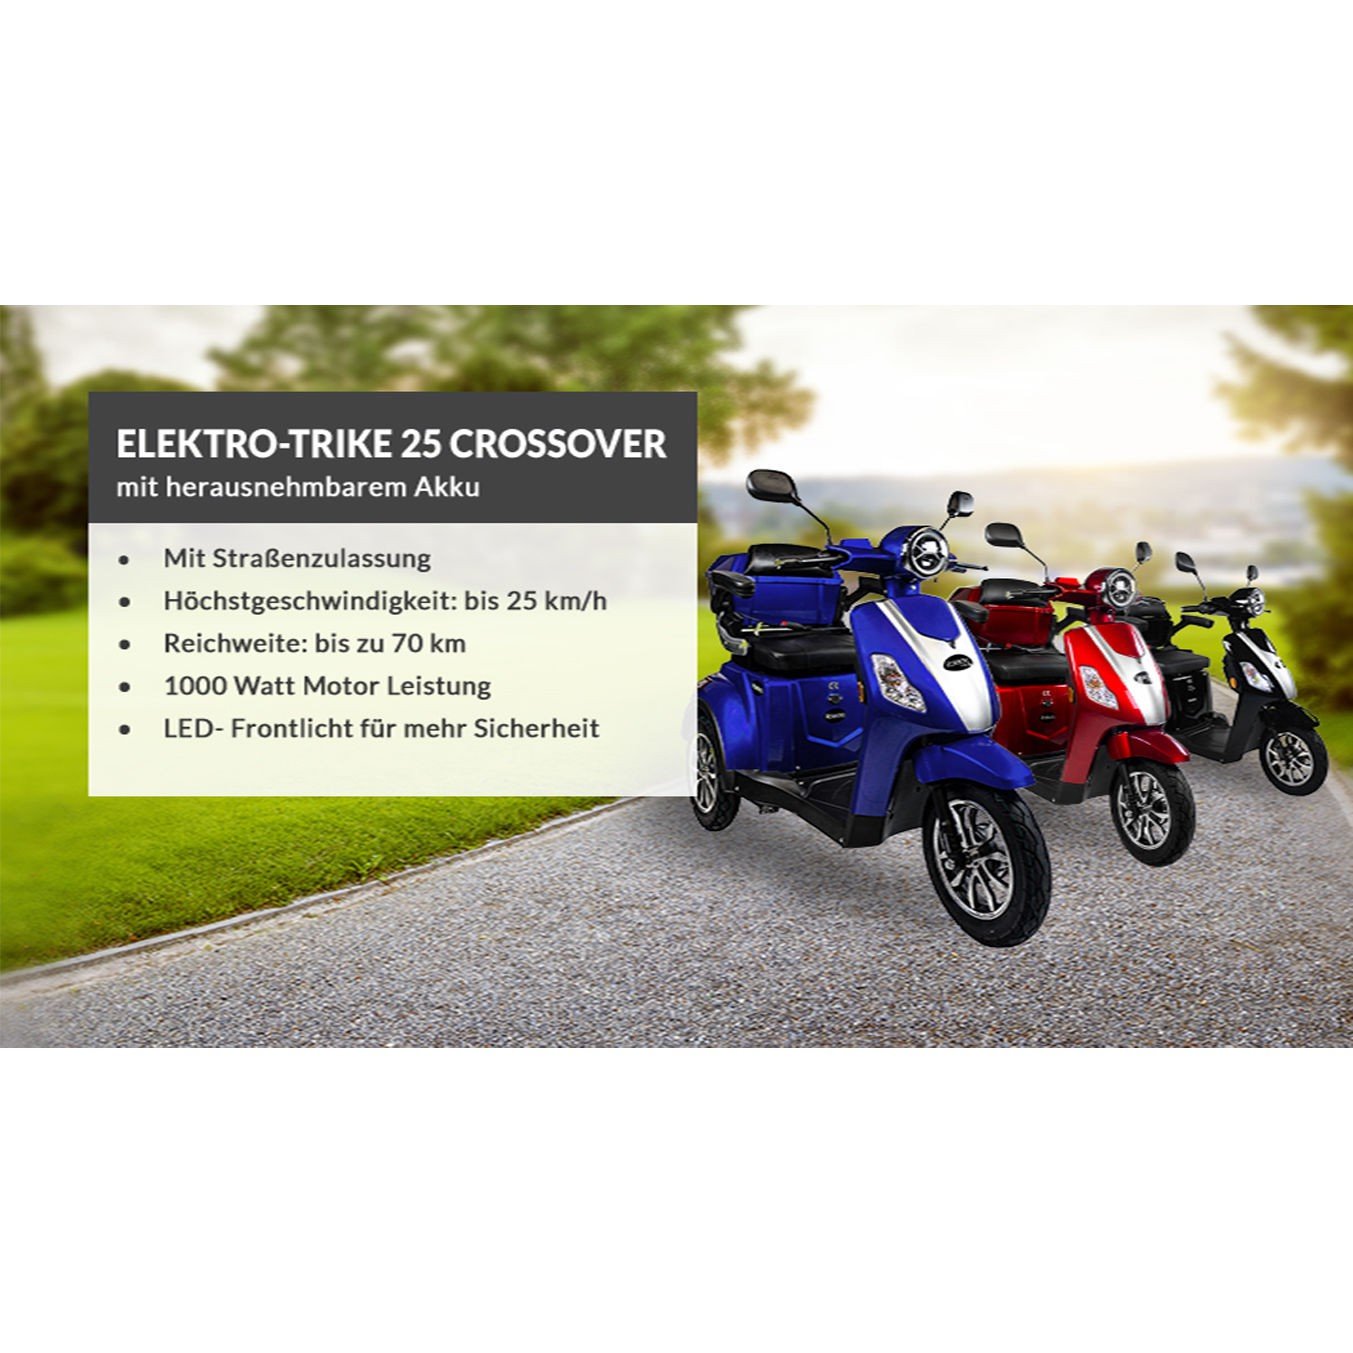 E-Trike Crossover - Elektro Mobile - Mobilität der Zukunft - Marken